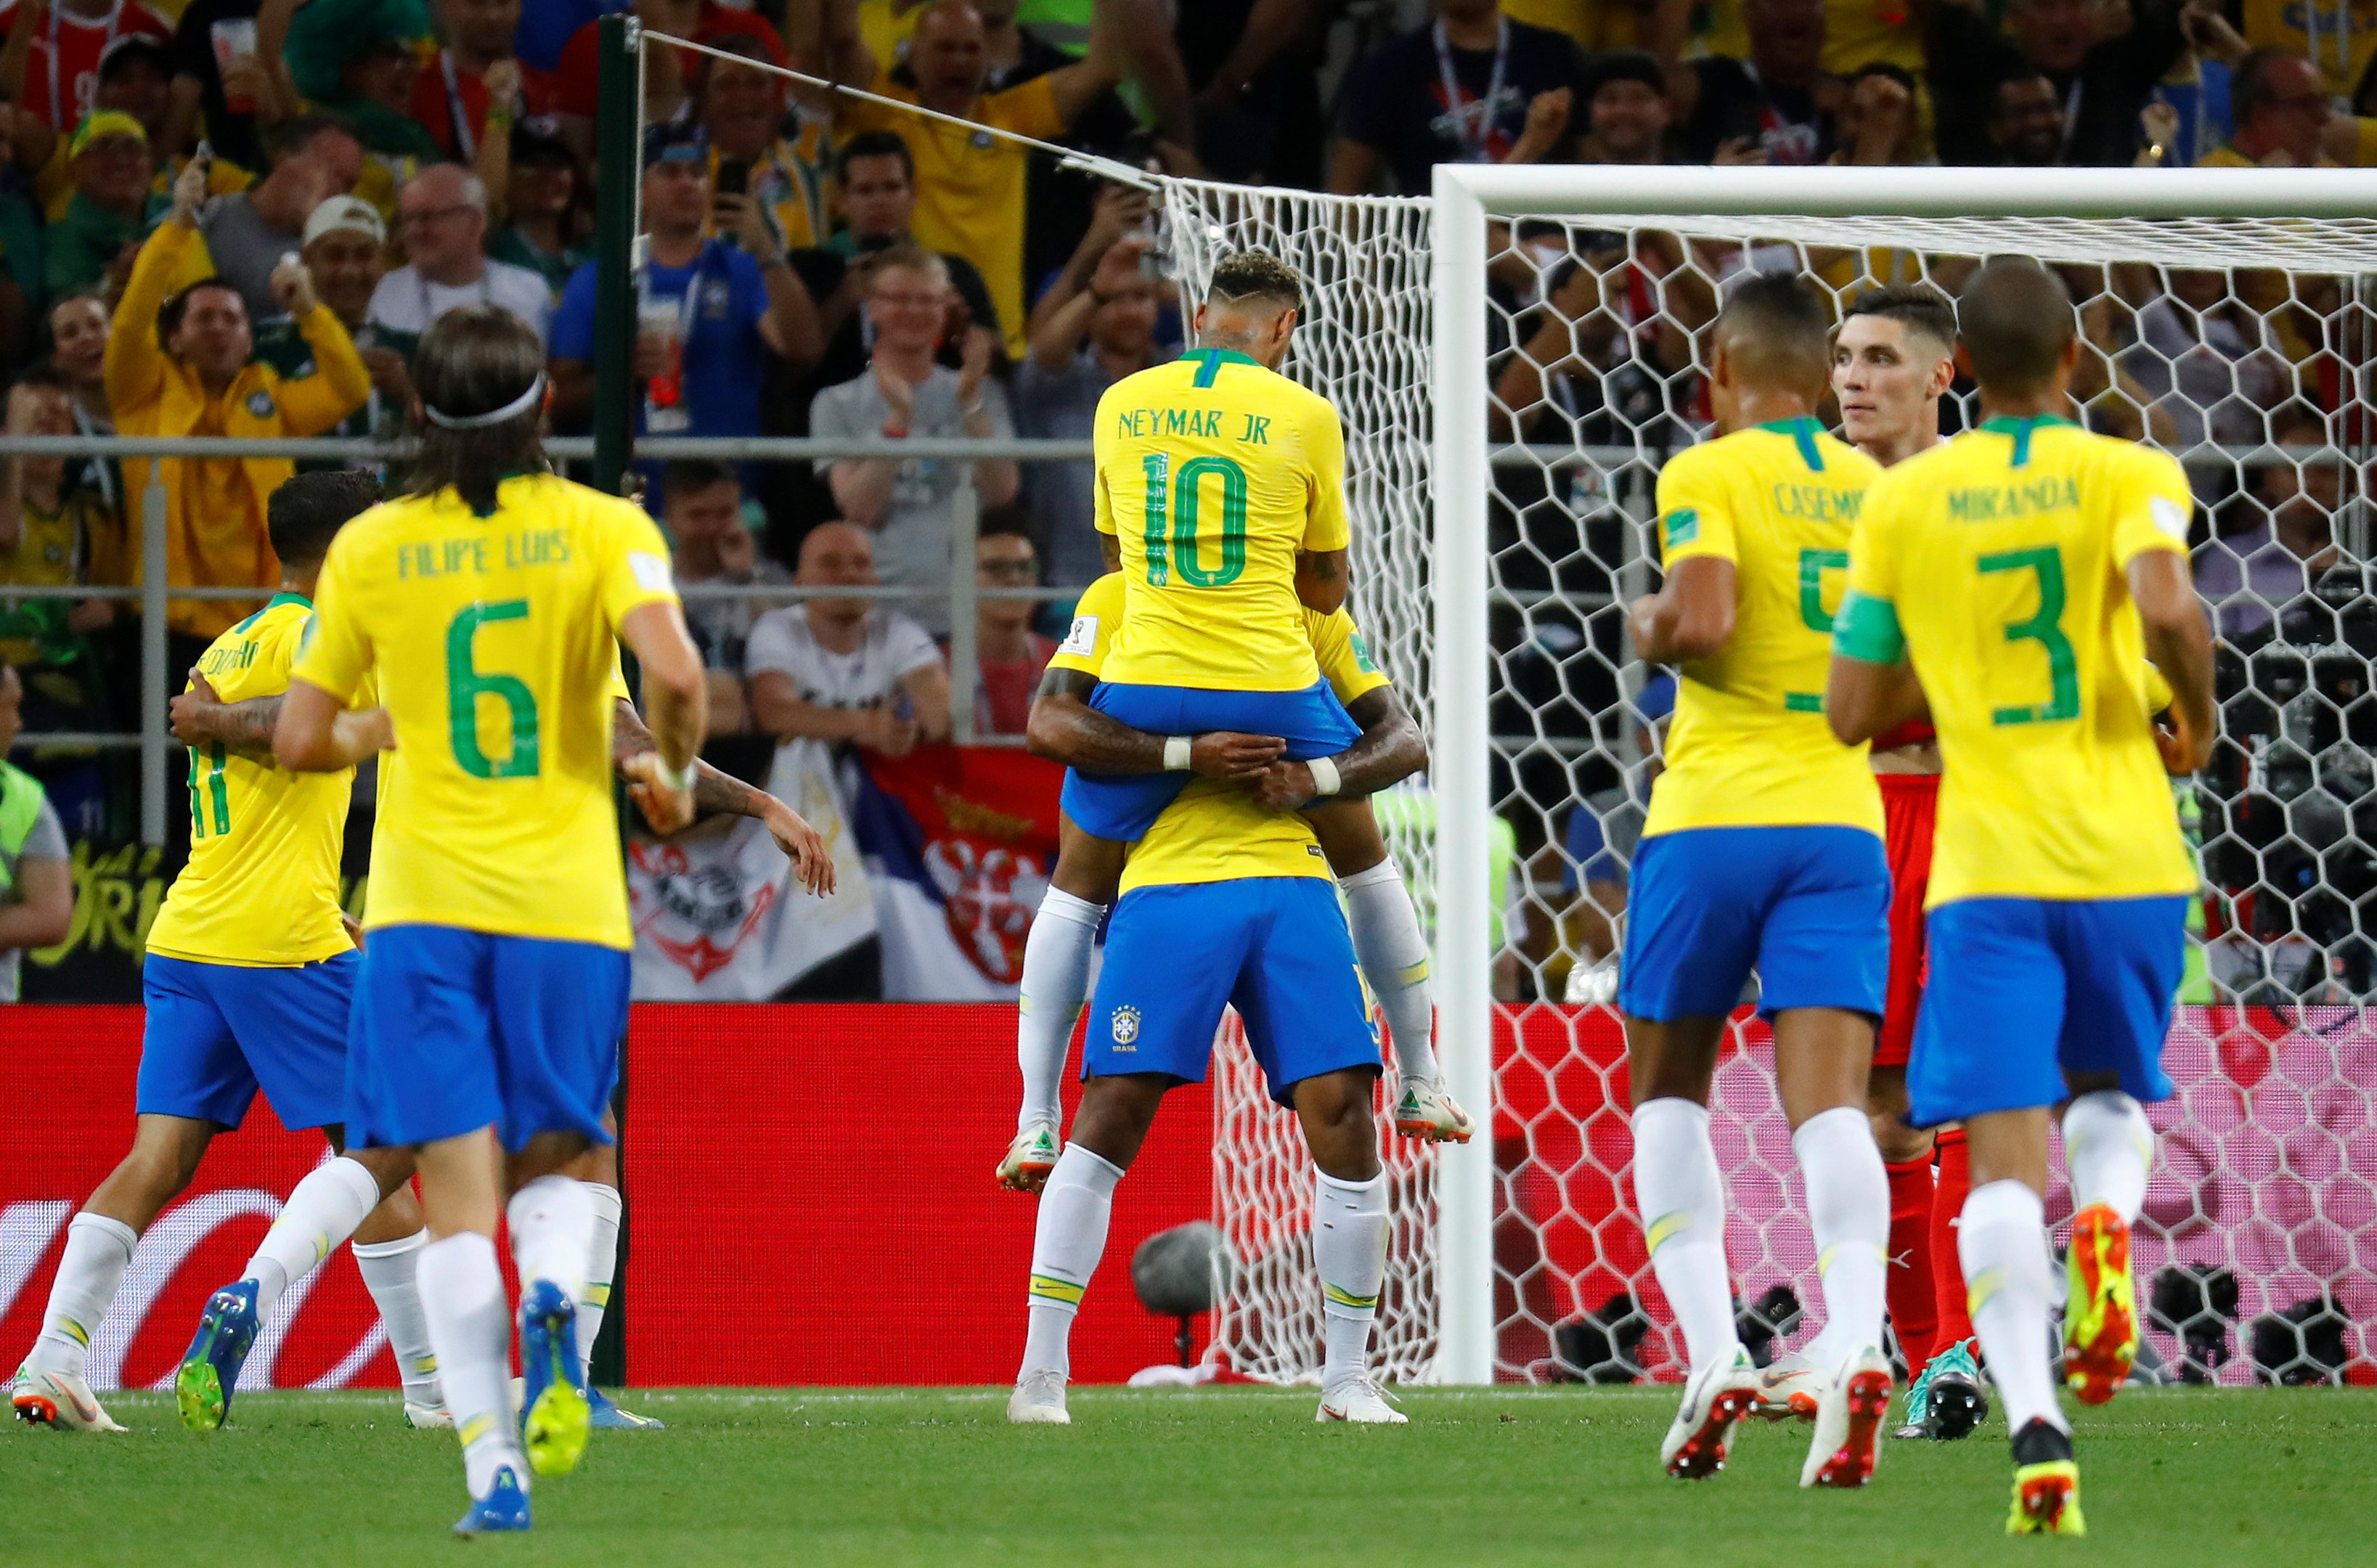 O Brasil fica em 2° lugar, com 9 títulos: 1919, 1922, 1949, 1989, 1997, 1999, 2004, 2007 e 2019